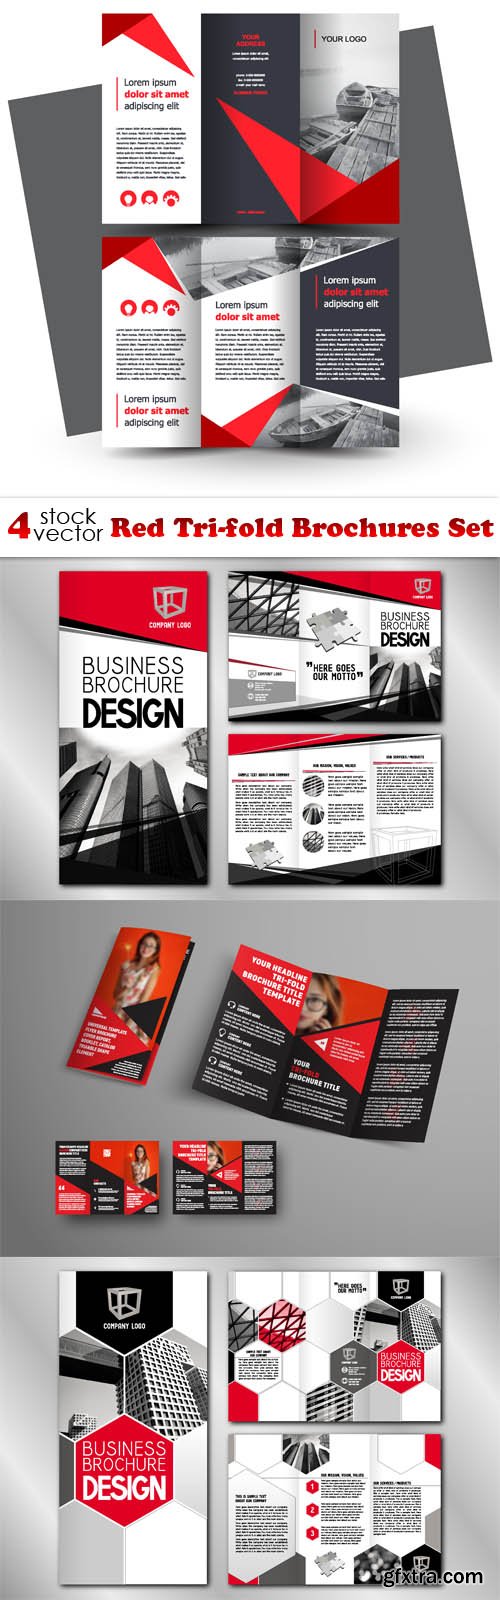 Vectors - Red Tri-fold Brochures Set